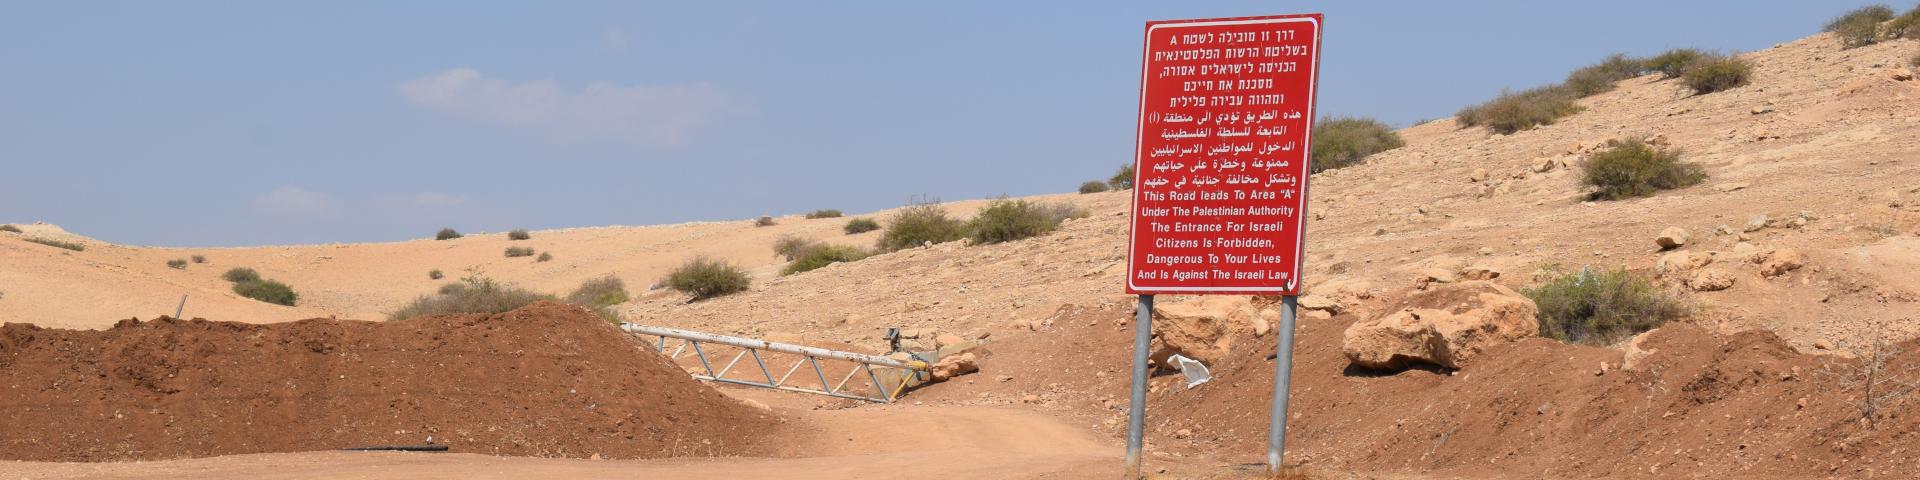 סוללת עפר ומחסום למנוע תנועה חפשית של פלסטינים